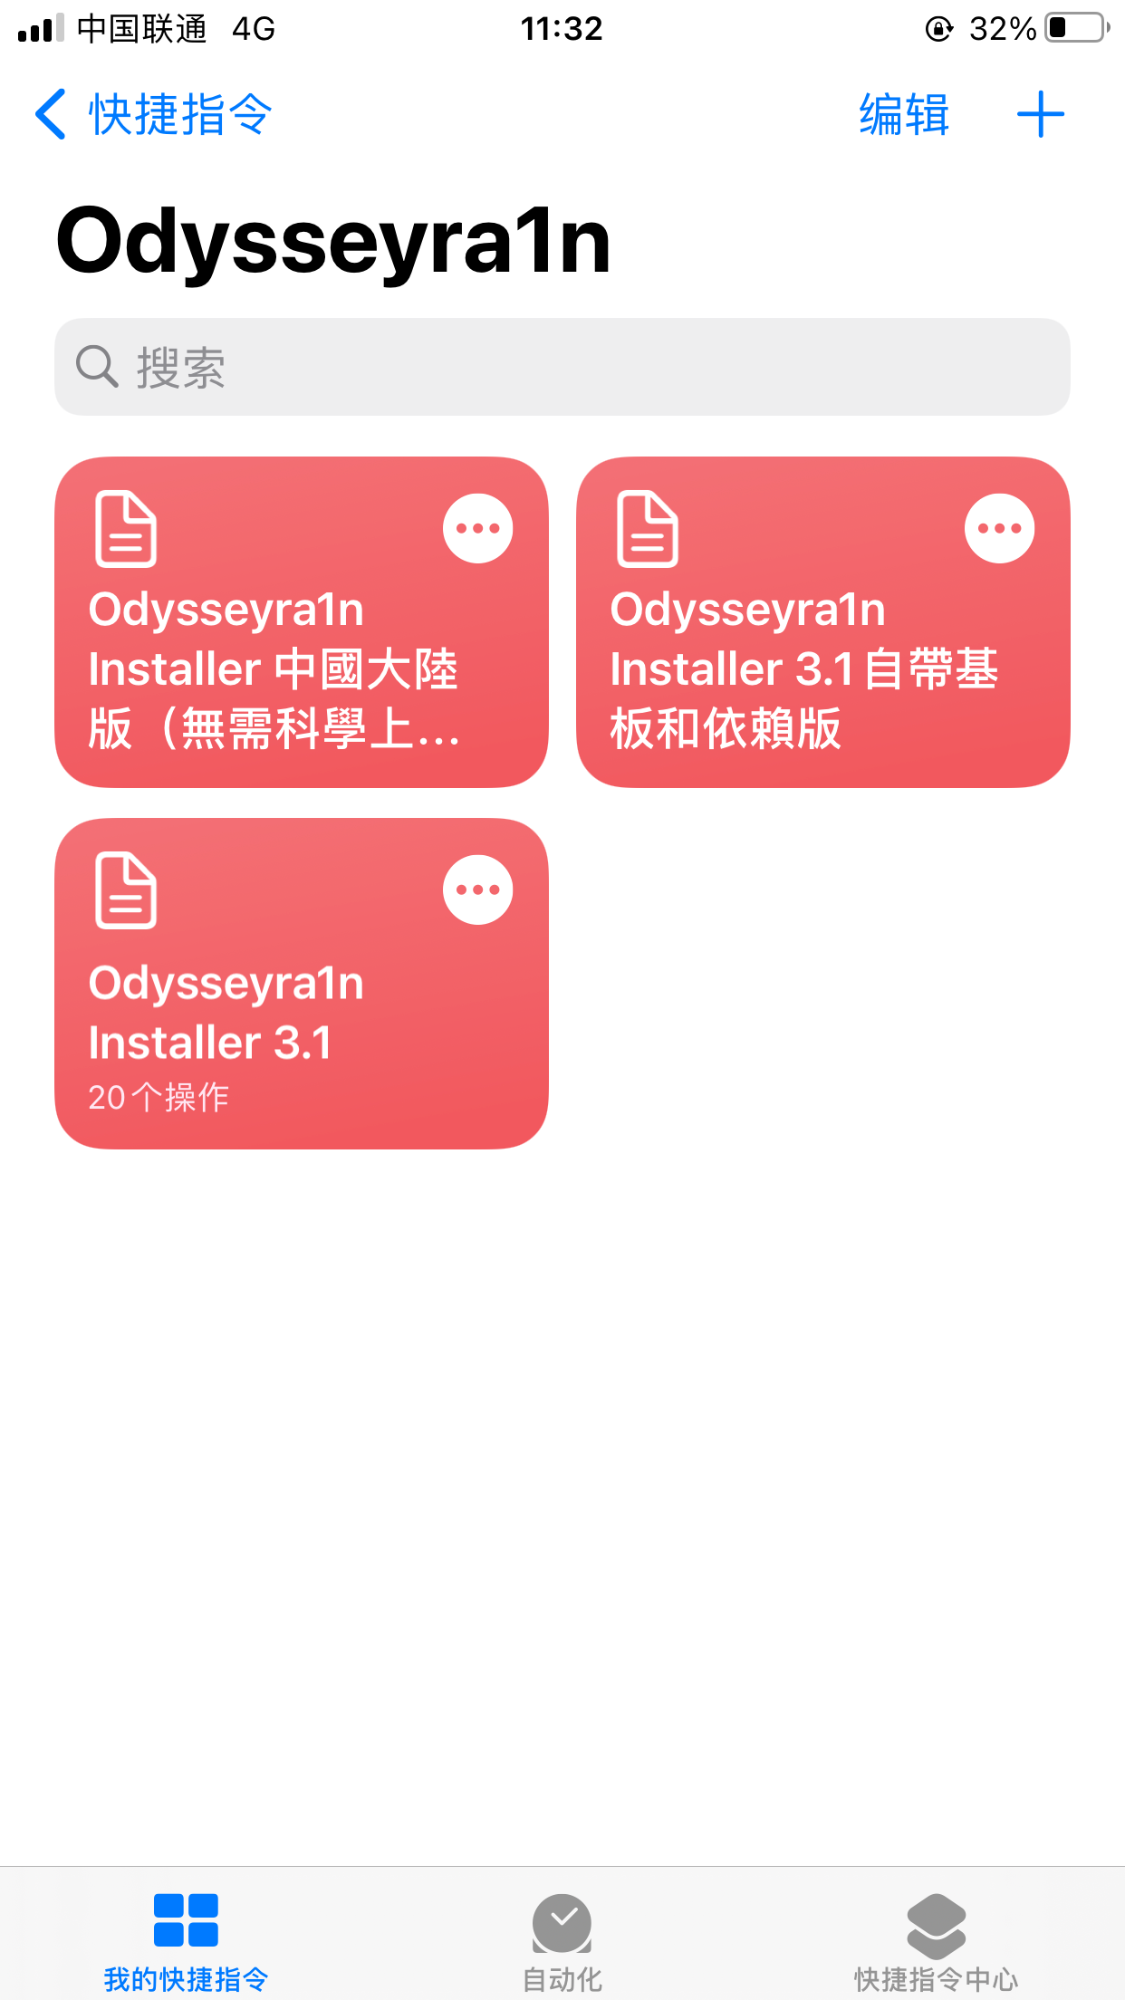 捷径安装 Odysseyra1n for iOS 12 - 14 - 图5